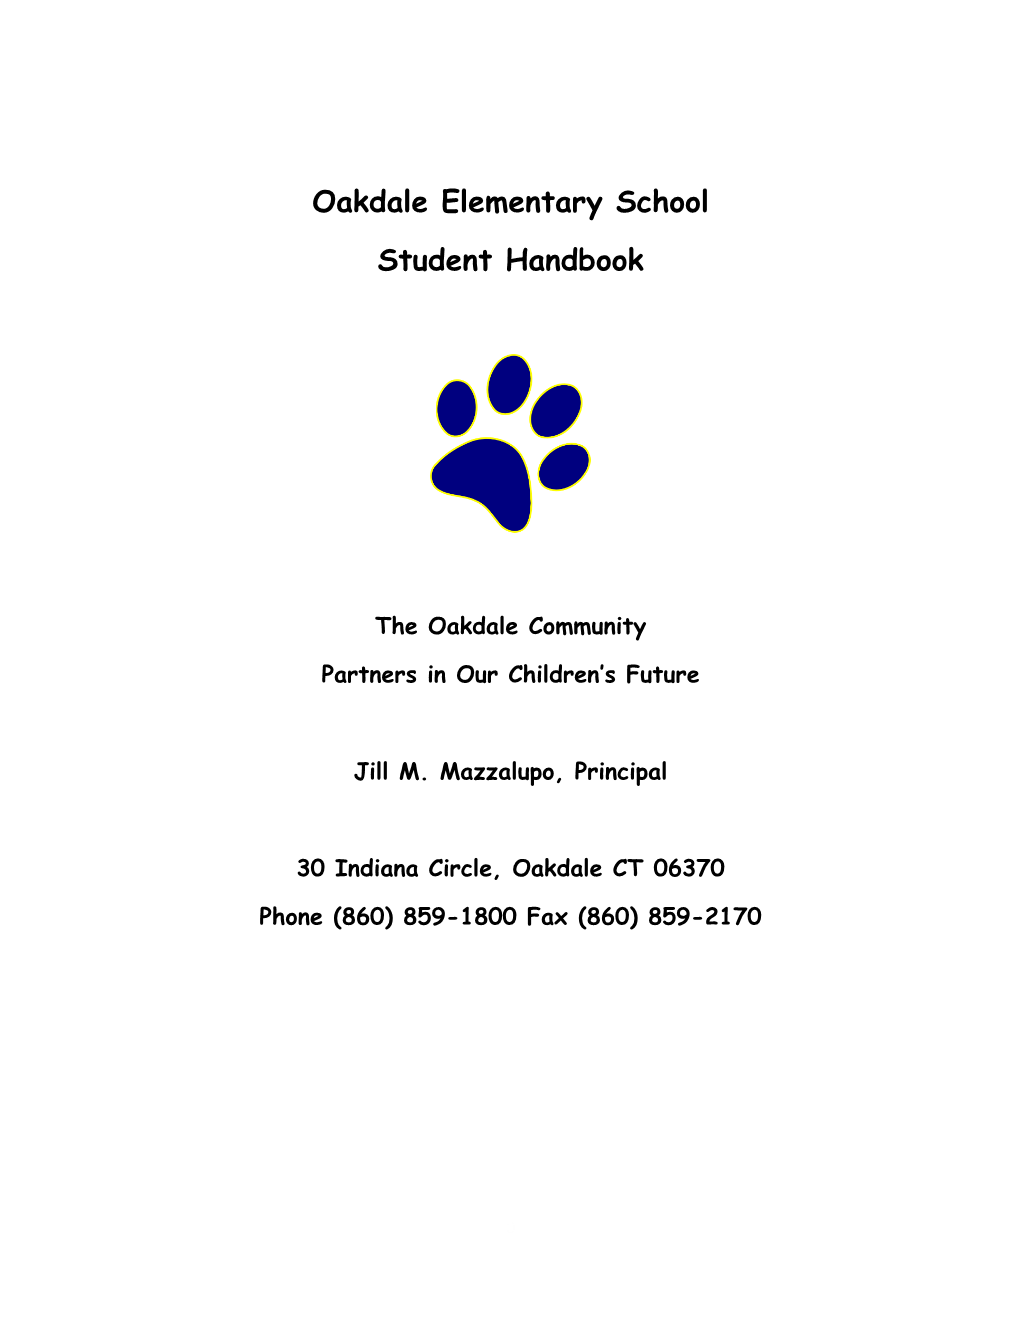 Oakdale Elementary School Student Handbook